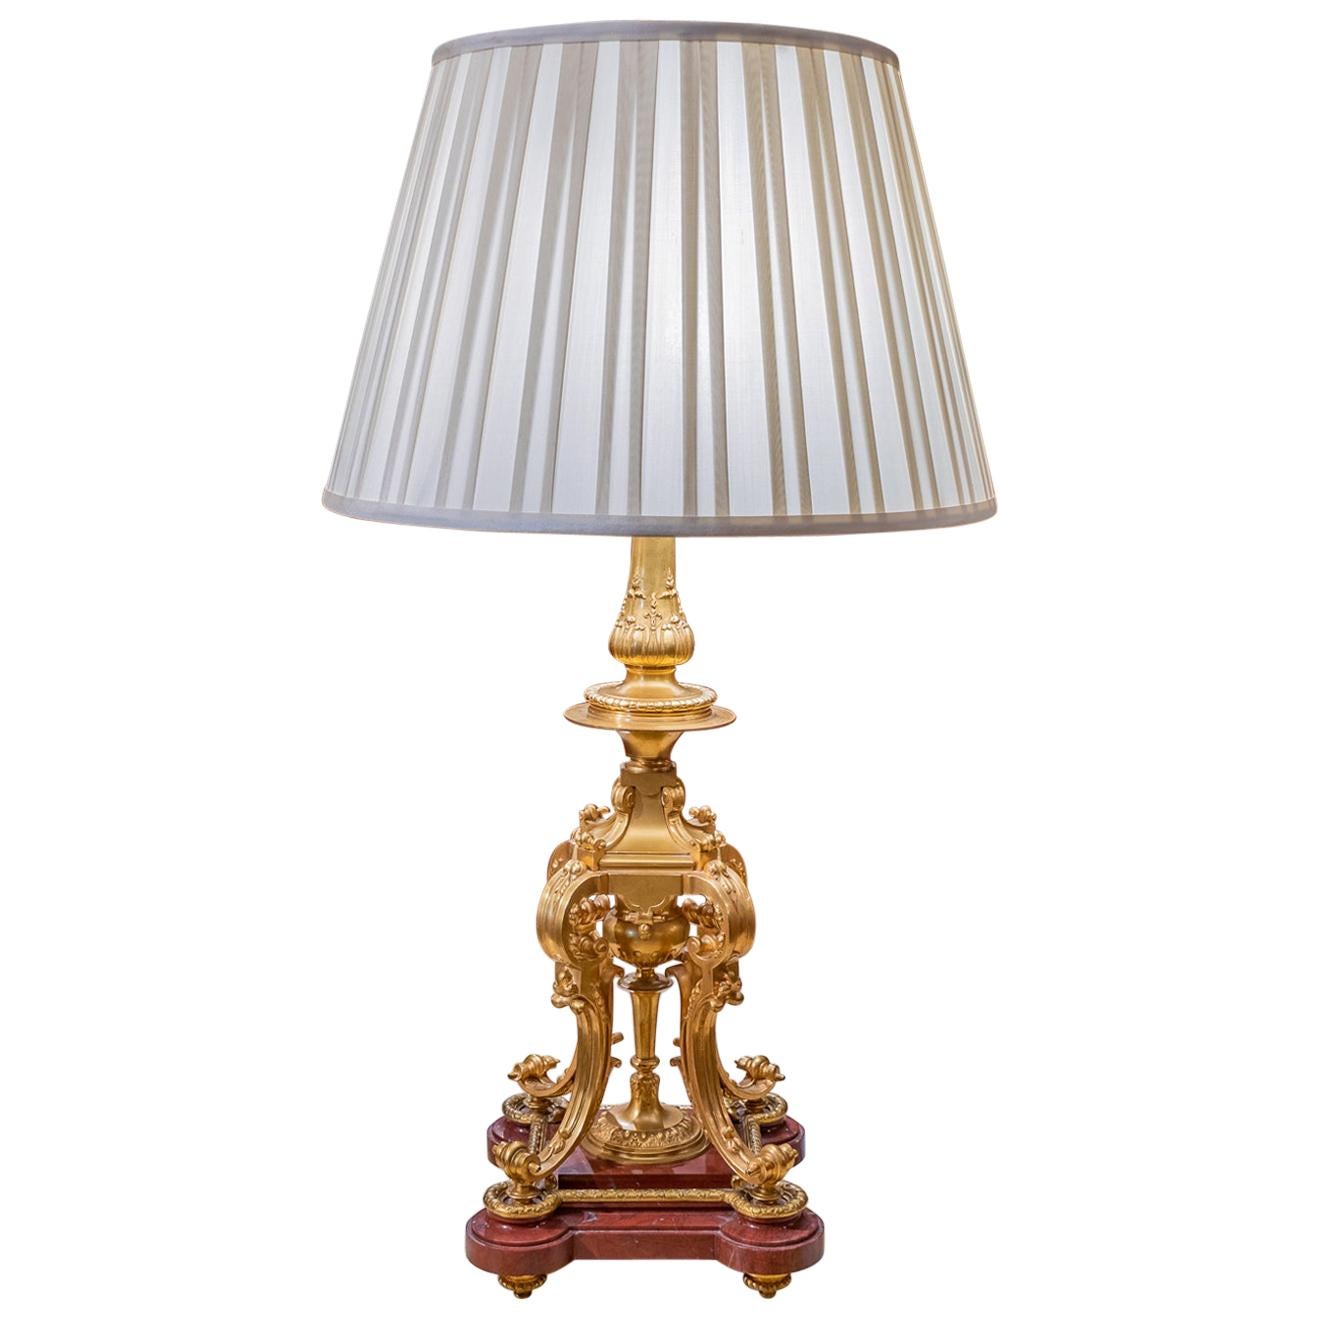 Lampe française du 19ème siècle en bronze doré et marbre de la plus haute qualité